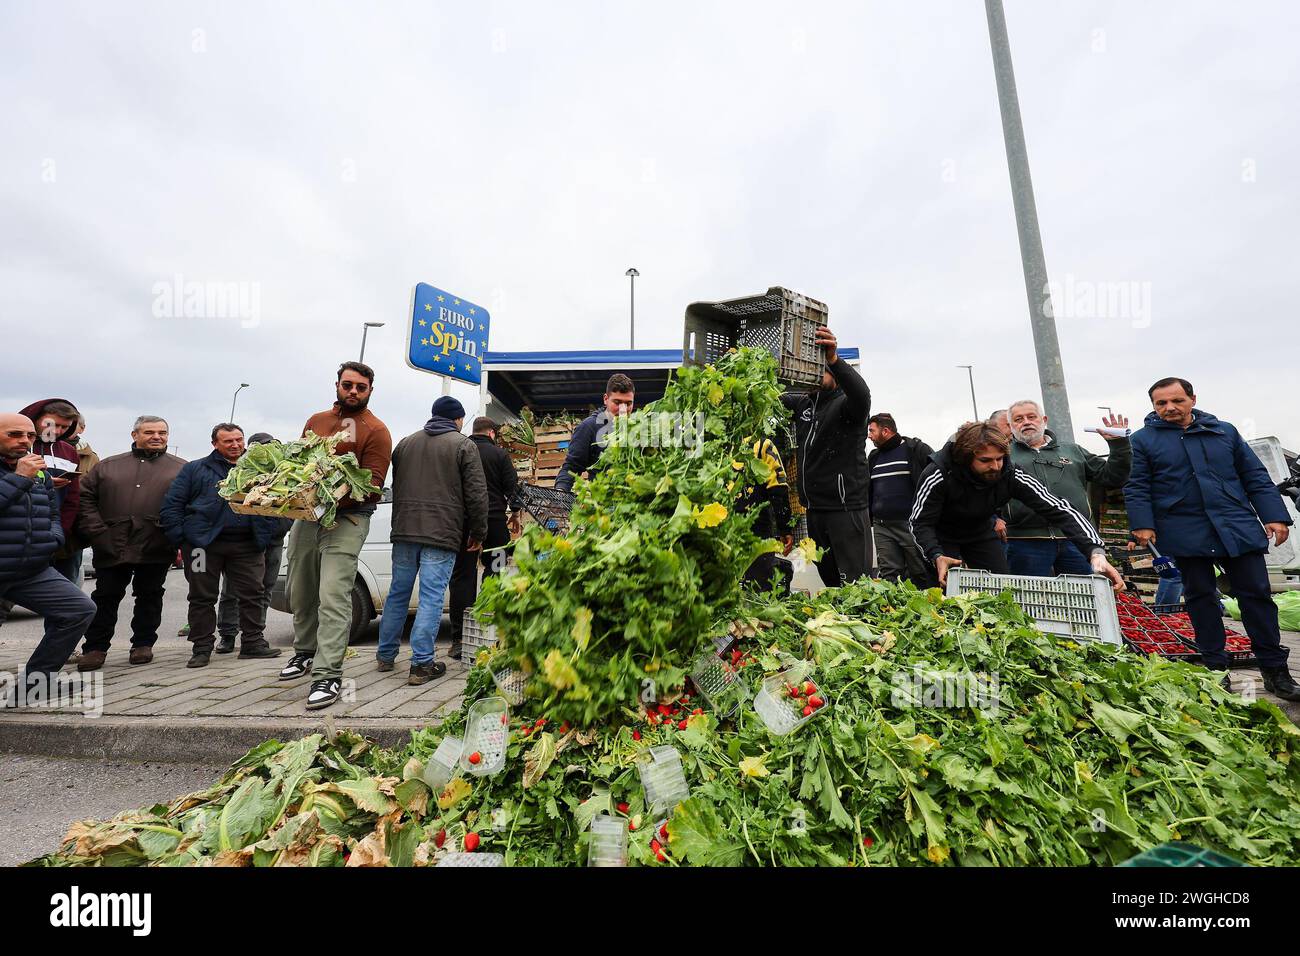 Les agriculteurs jettent leurs produits, fruits et légumes, lors de la manifestation pour protester contre les initiatives du «pacte vert», approuvées par l'UE Banque D'Images